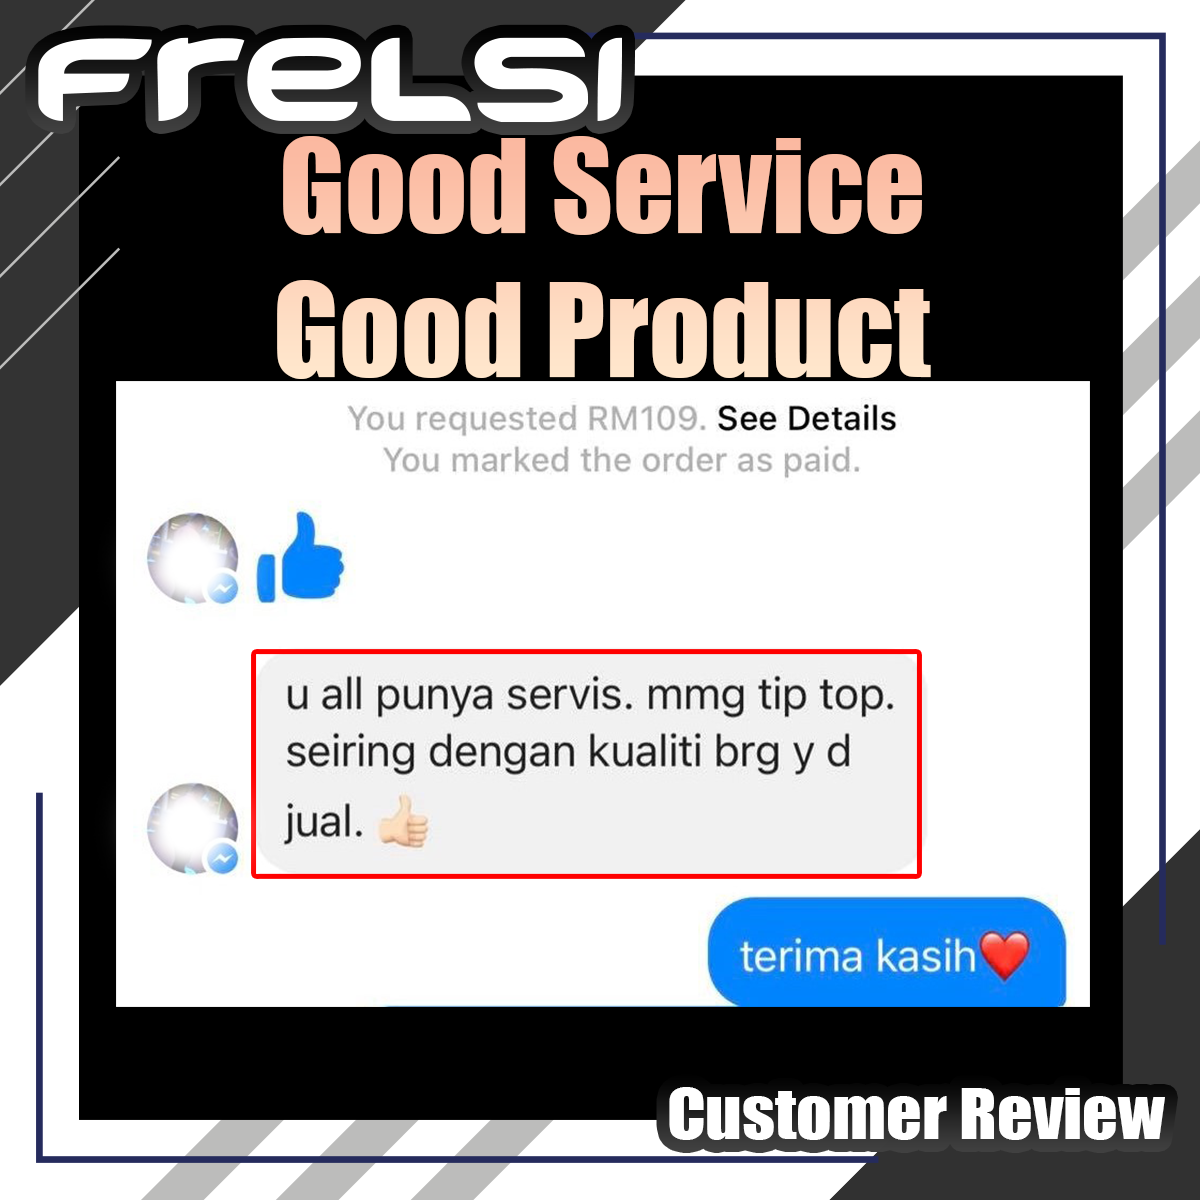 Frelsi Deodorant Customer Review terbaik good service good product